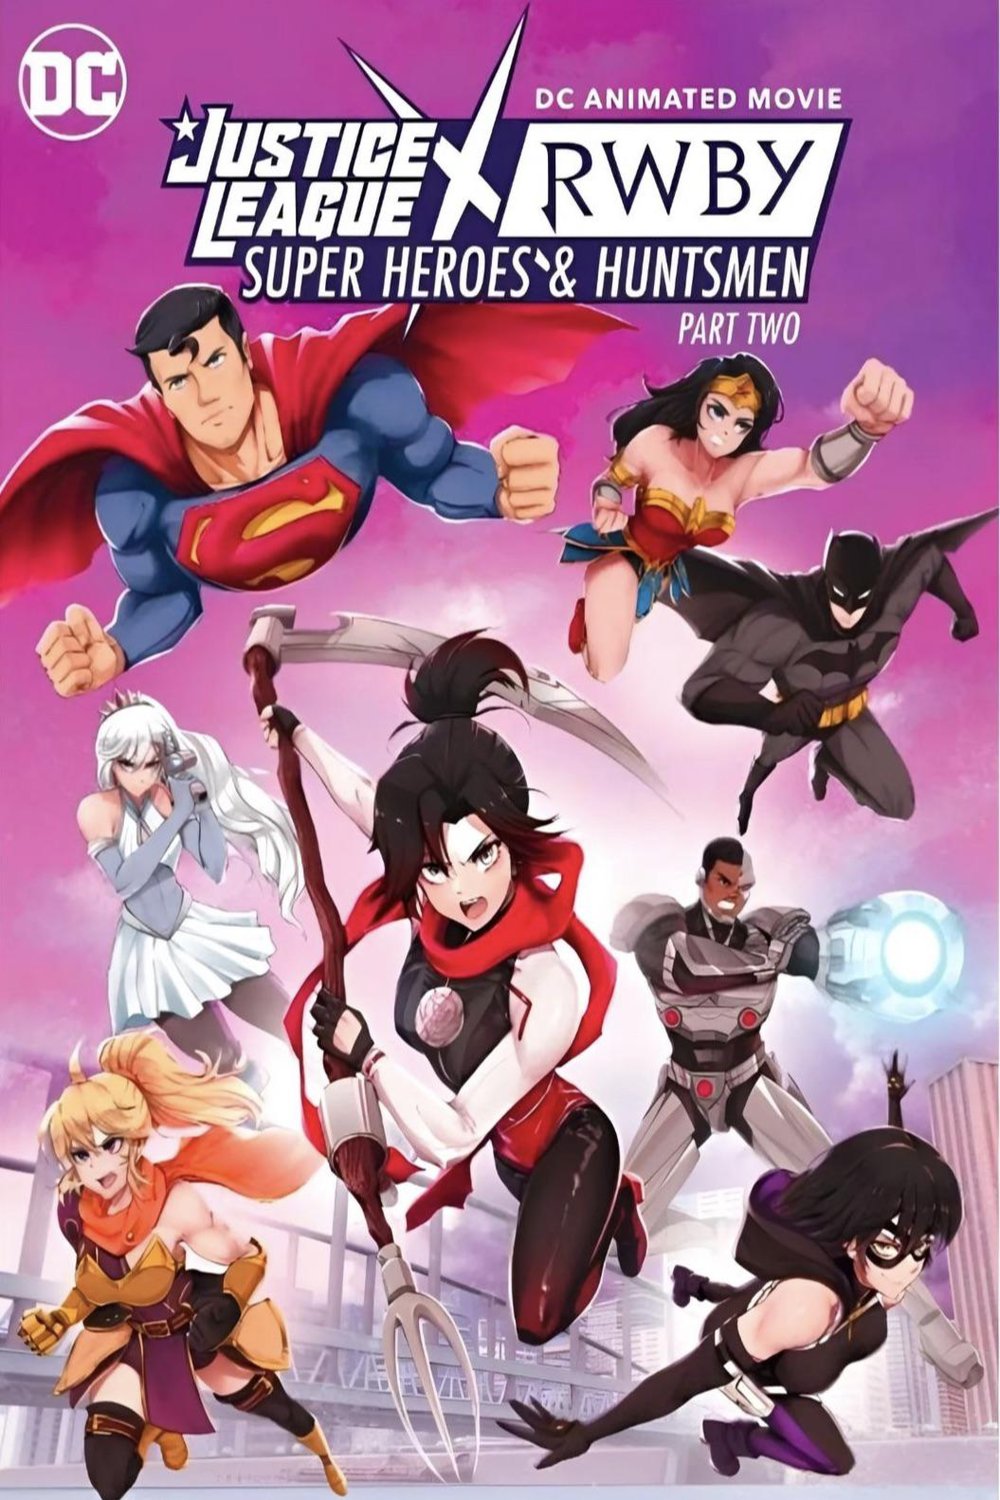 L'affiche du film Justice League x RWBY: Super Heroes and Huntsmen Part Two